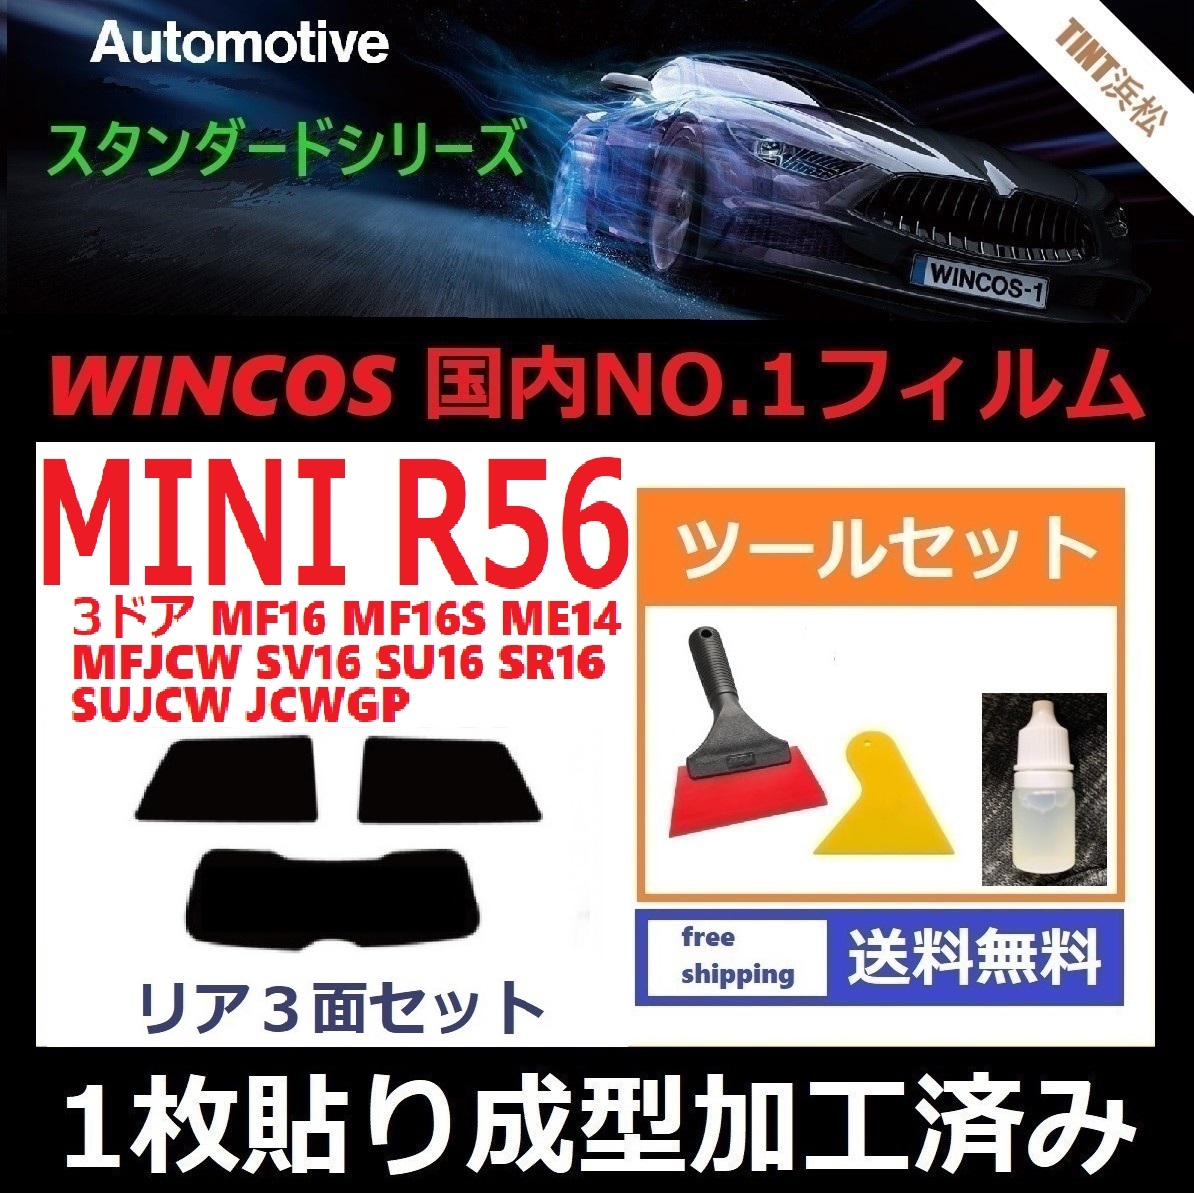 １枚貼り成型加工済みフィルム MINI ミニ 3ドア (R56系 MF16 ME14 MFJCW SV16 SU16 他) 【WINCOS】 ツールセット付き ドライ成型